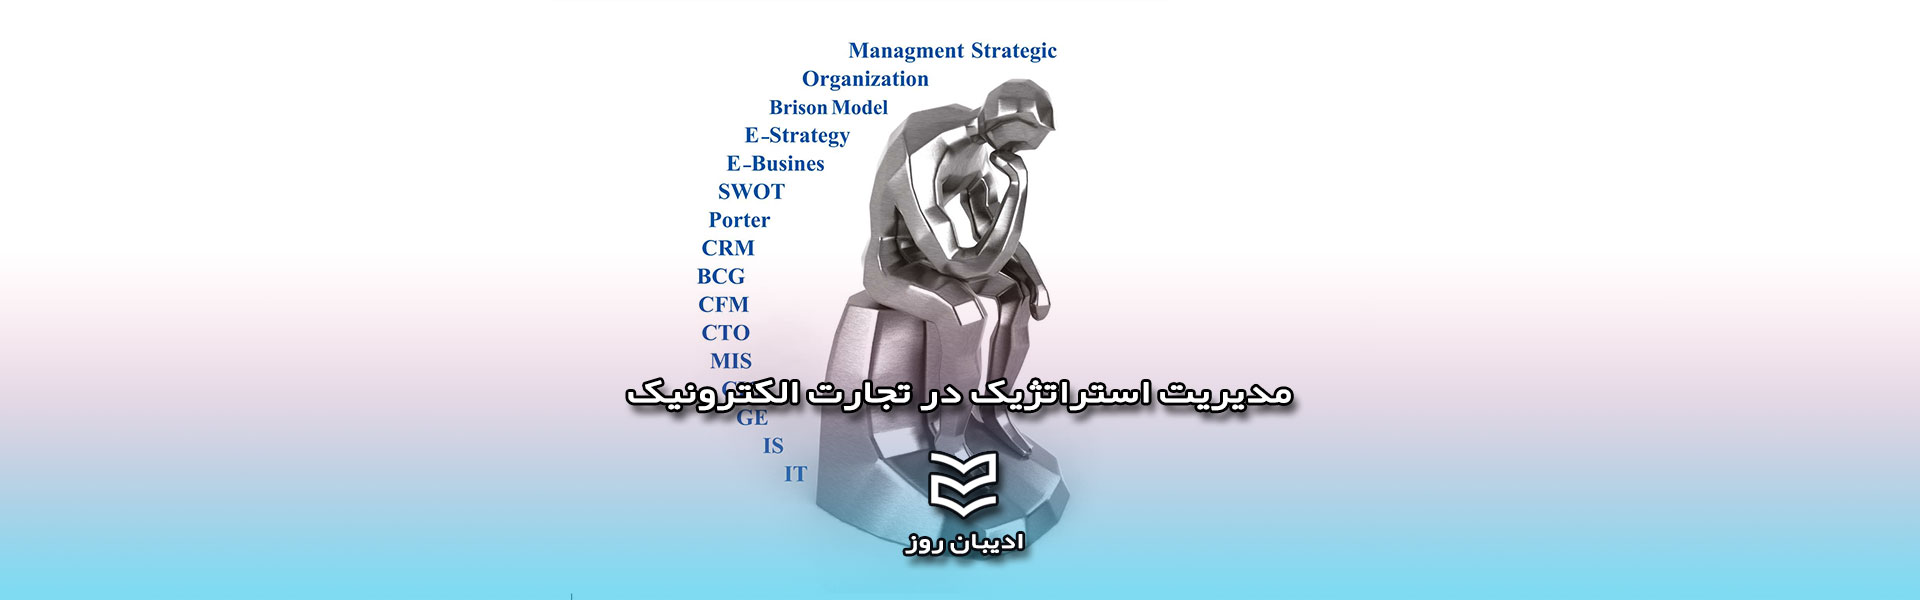 مدیریت استراتژیک در تجارت الکترونیک